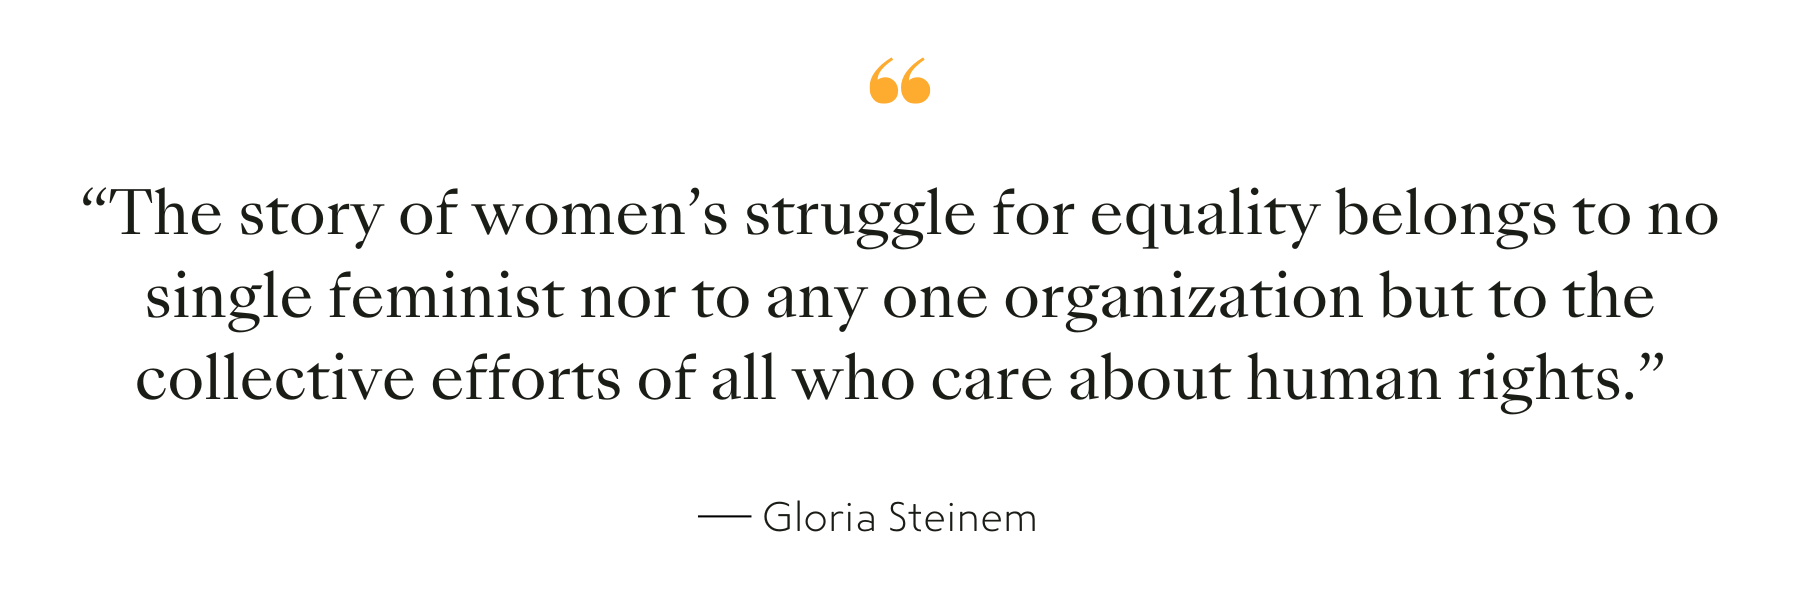 Quote by Gloria Steinem, writer, lecturer, political activist, and feminist organizer.